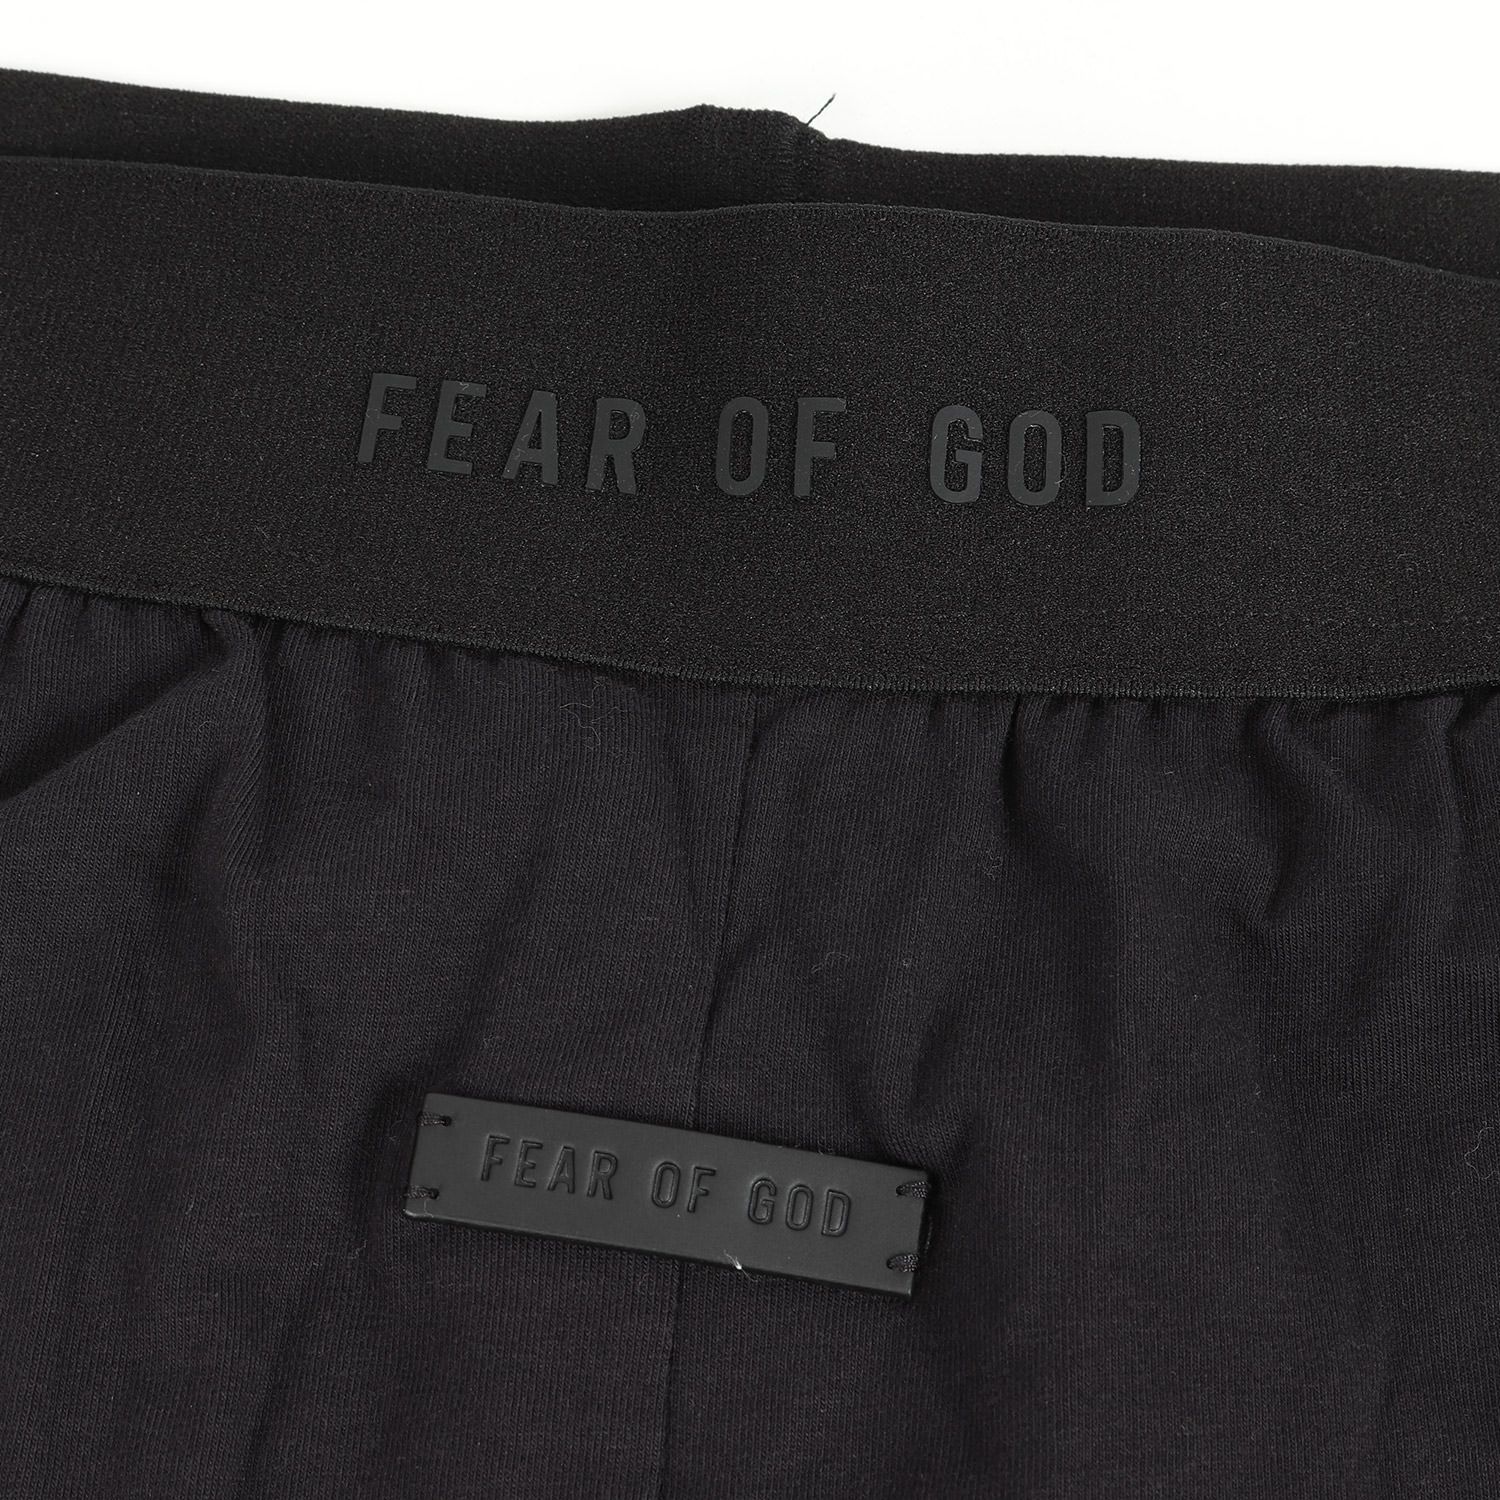 セール特別価格 FEAR OF GOD フィアオブゴッド パンツ ライトウェイト ストレッチ ジョガーパンツ ブラック 黒 L イタリア製 ブランド 